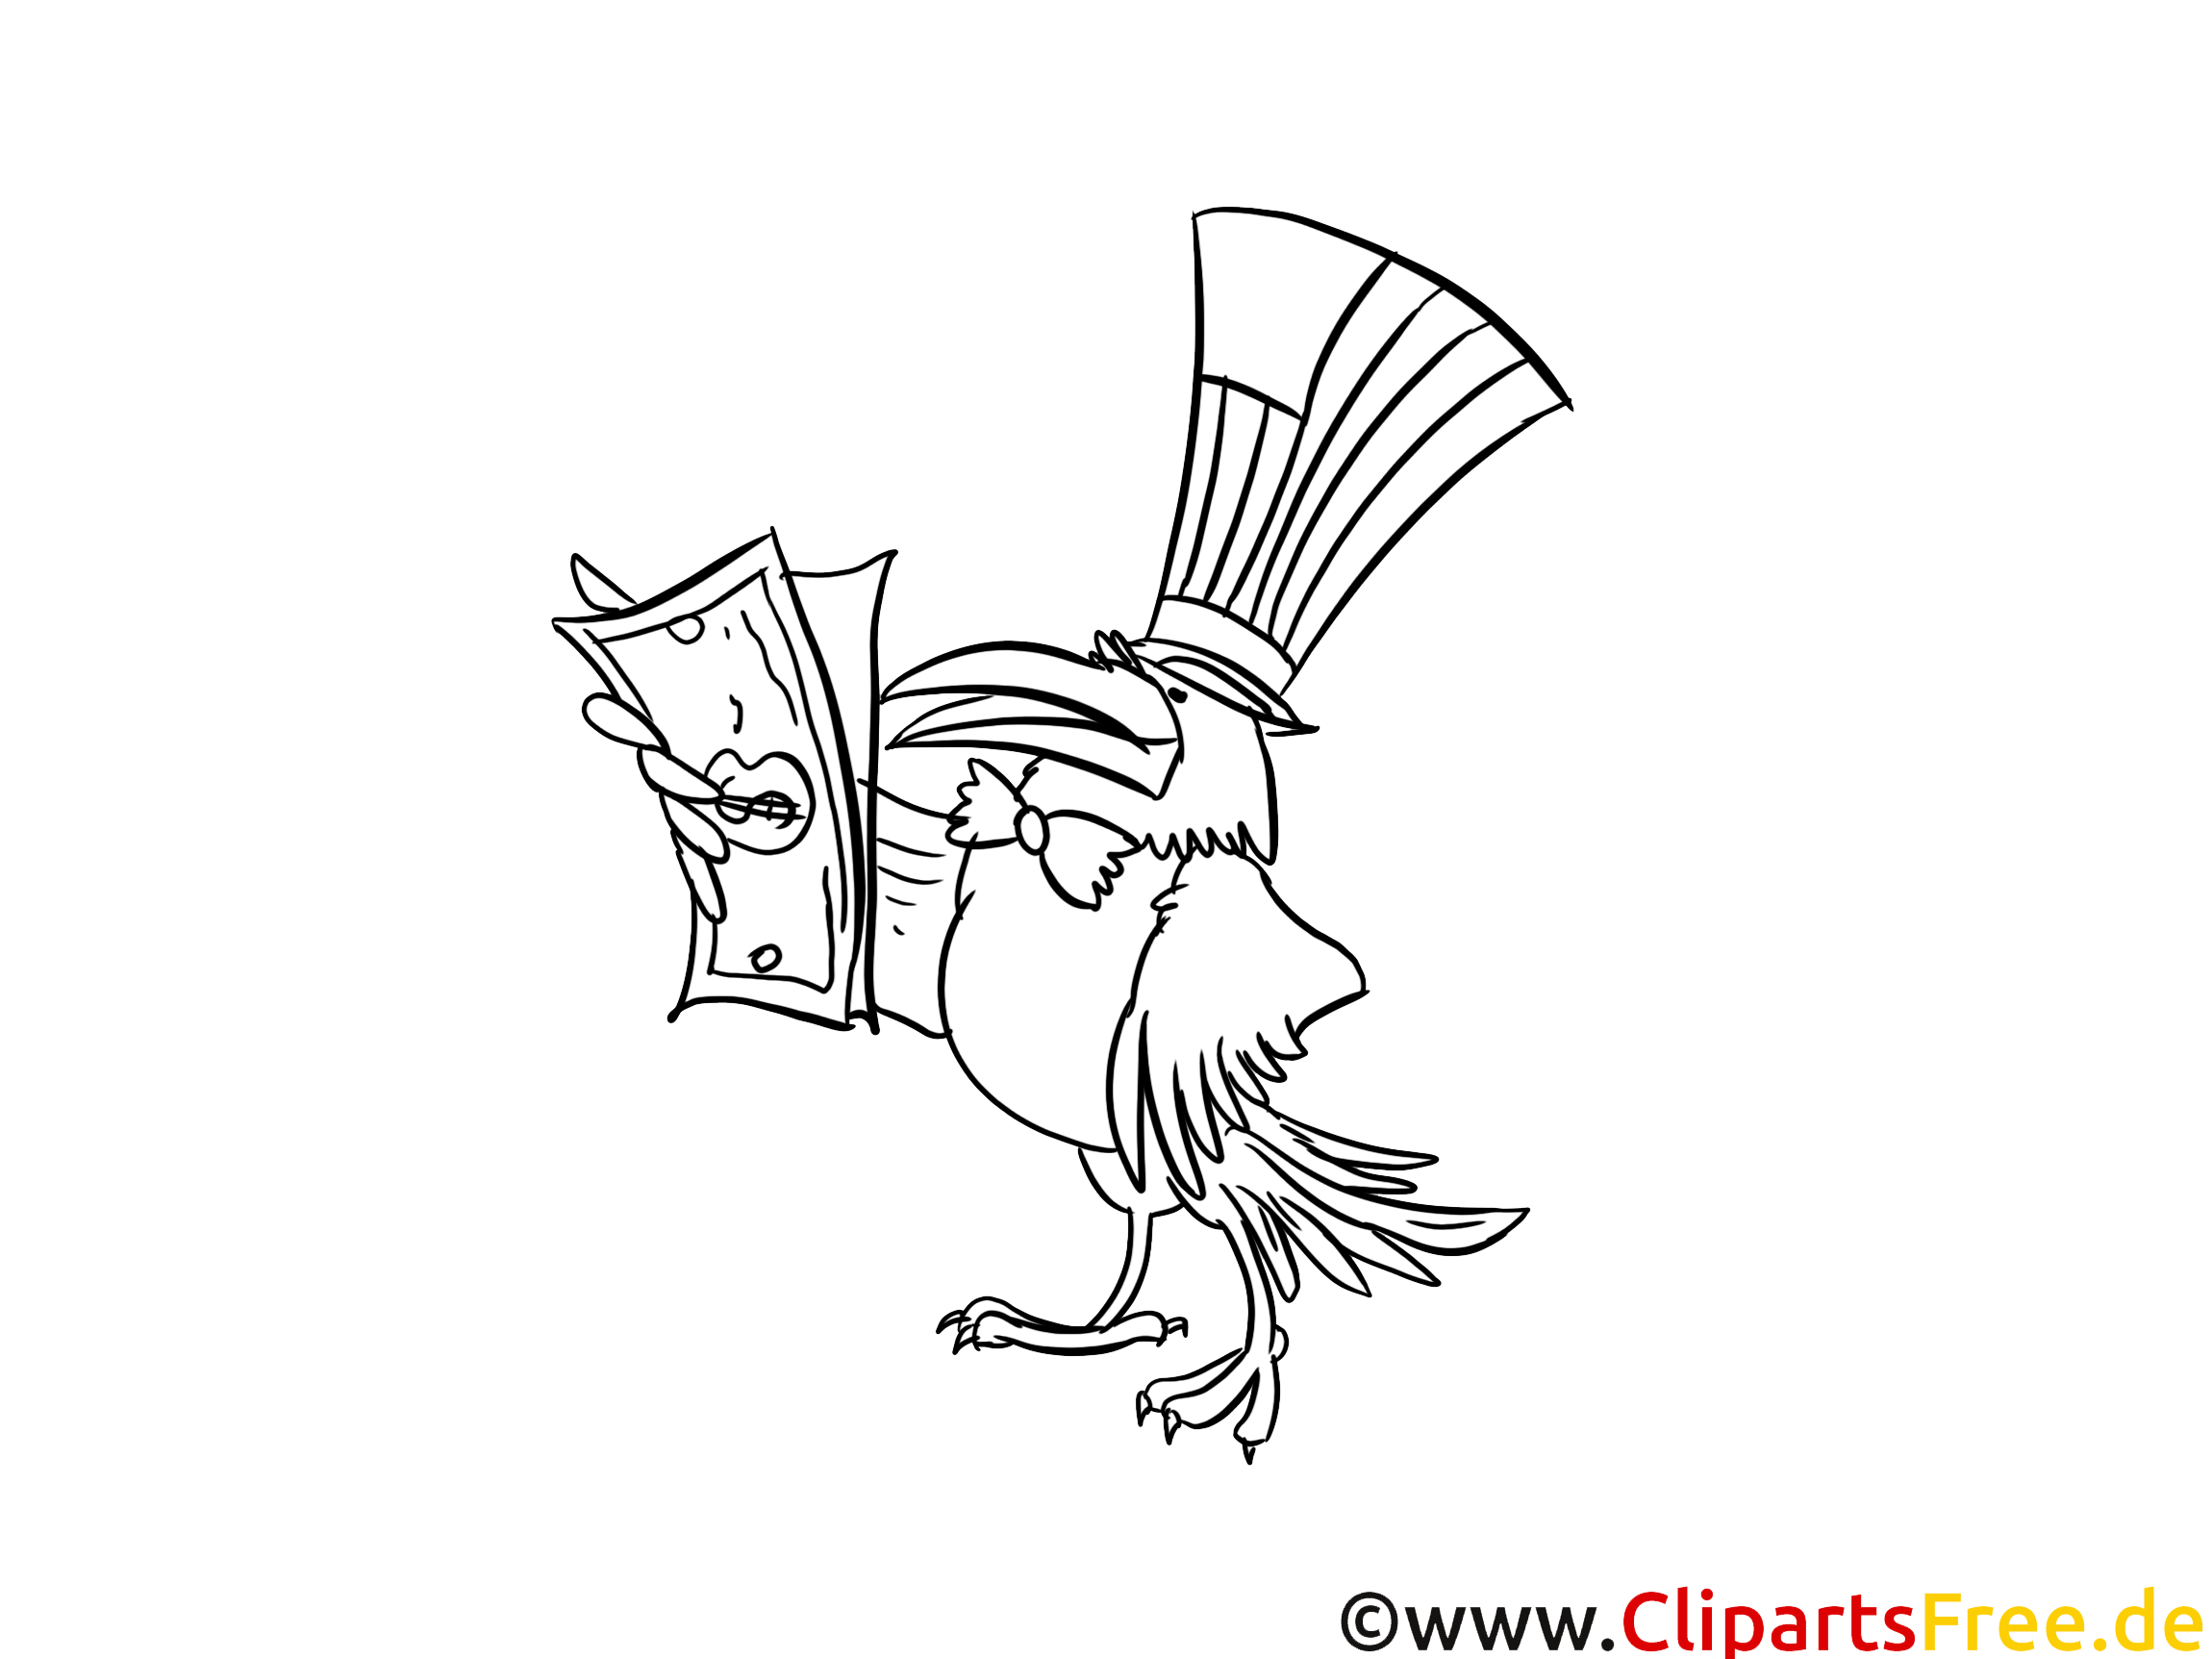 Corbeau cliparts gratuis – Argent à imprimer